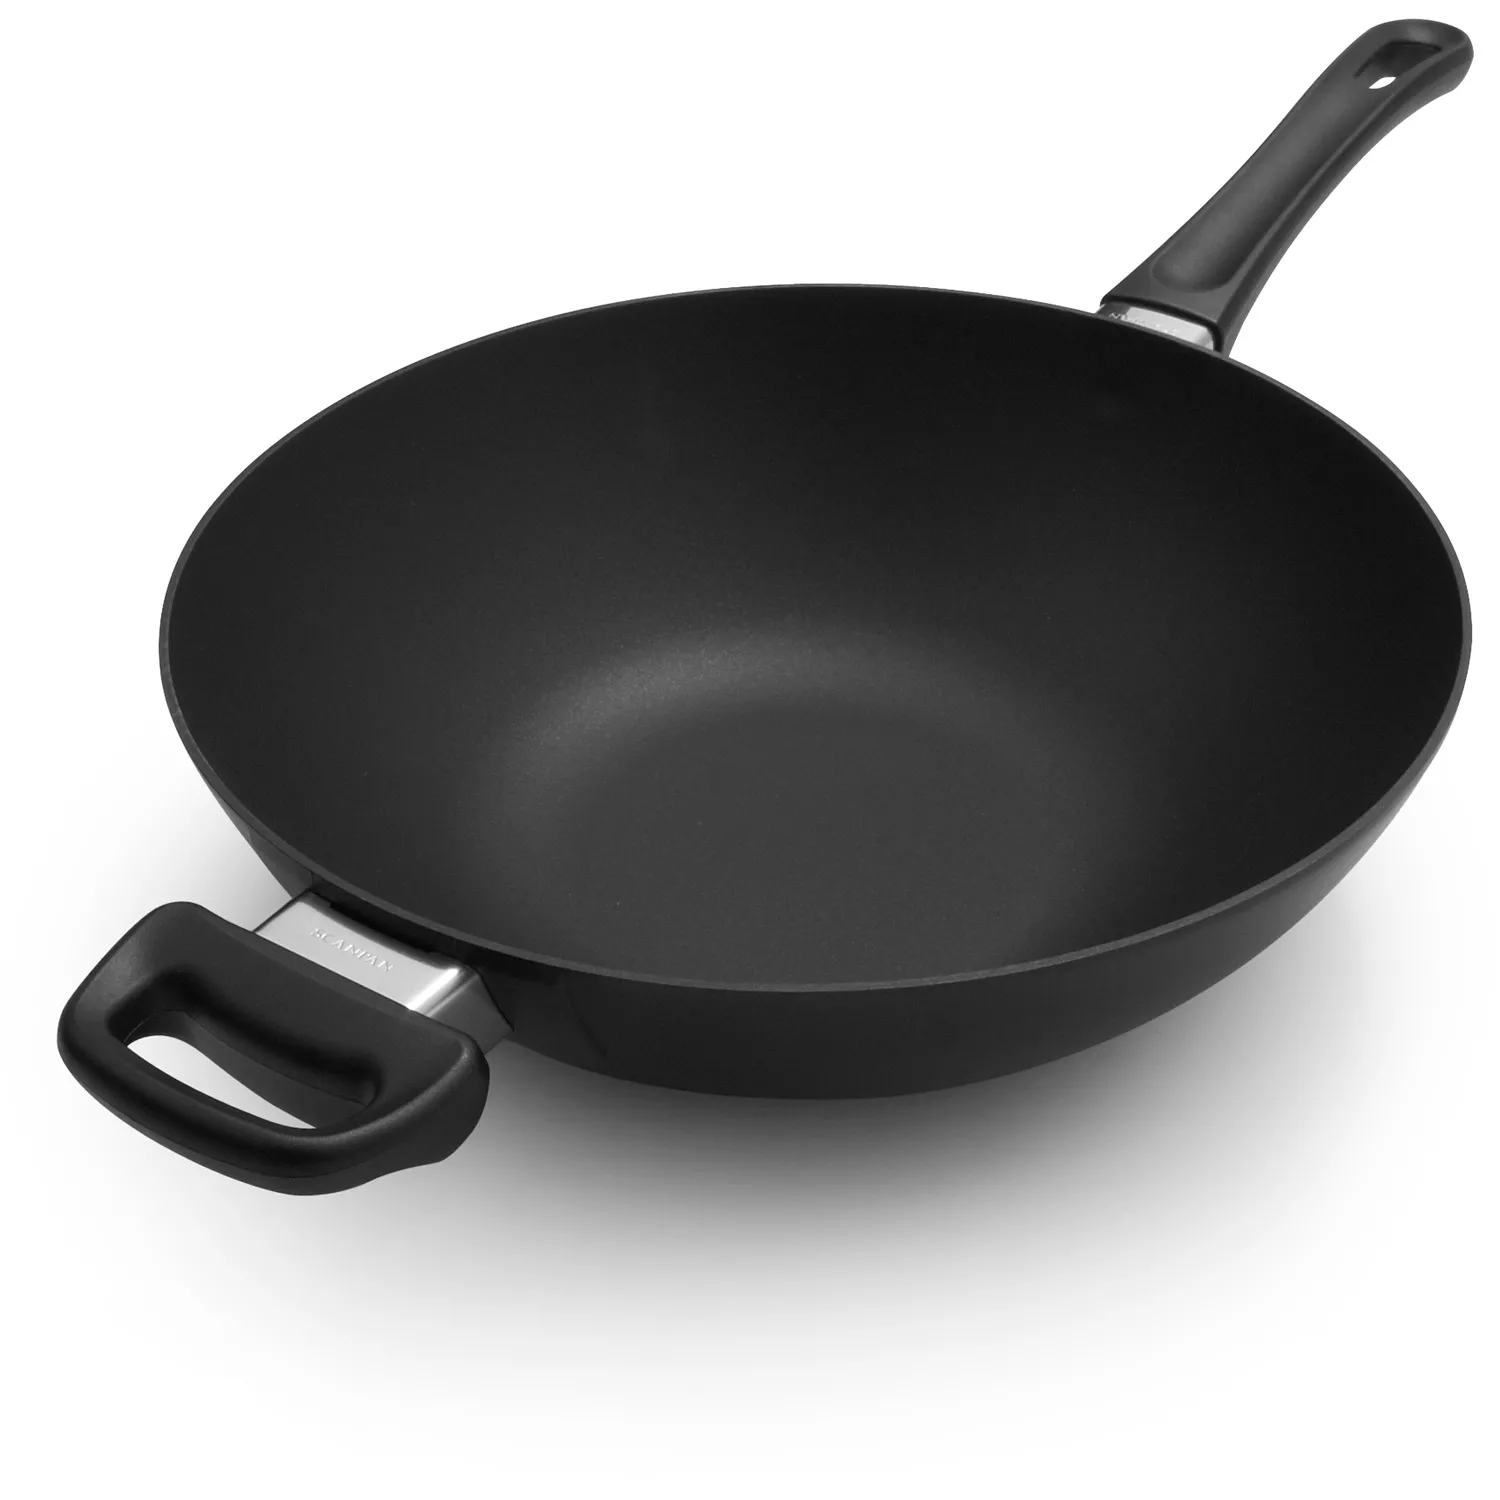 Scanpan Classic 12.5, 32cm Nonstick Fry Pan, Black